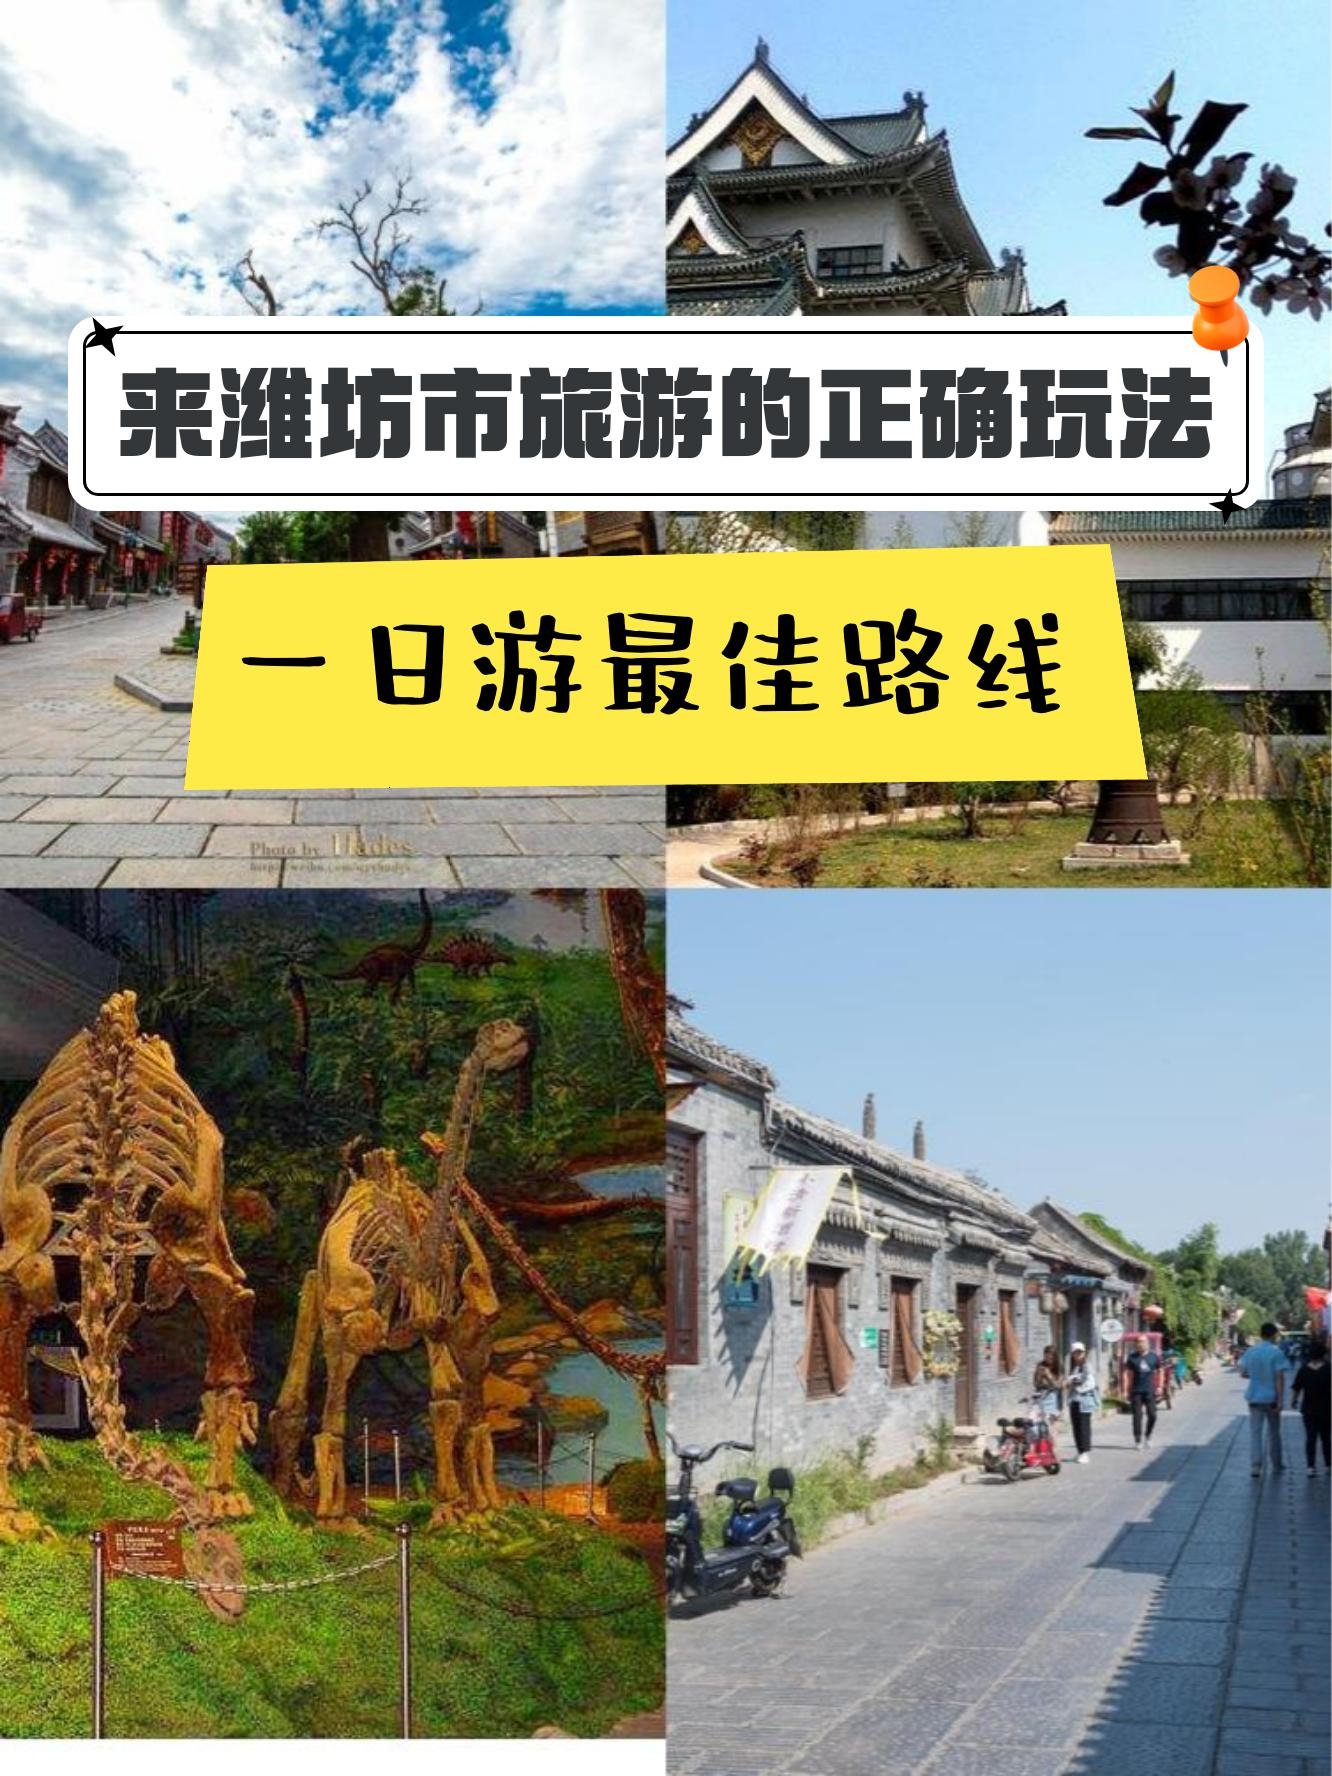 4 景区营业时间 :全天开放 青州古城,历史悠久的省级城市,拥有1600多